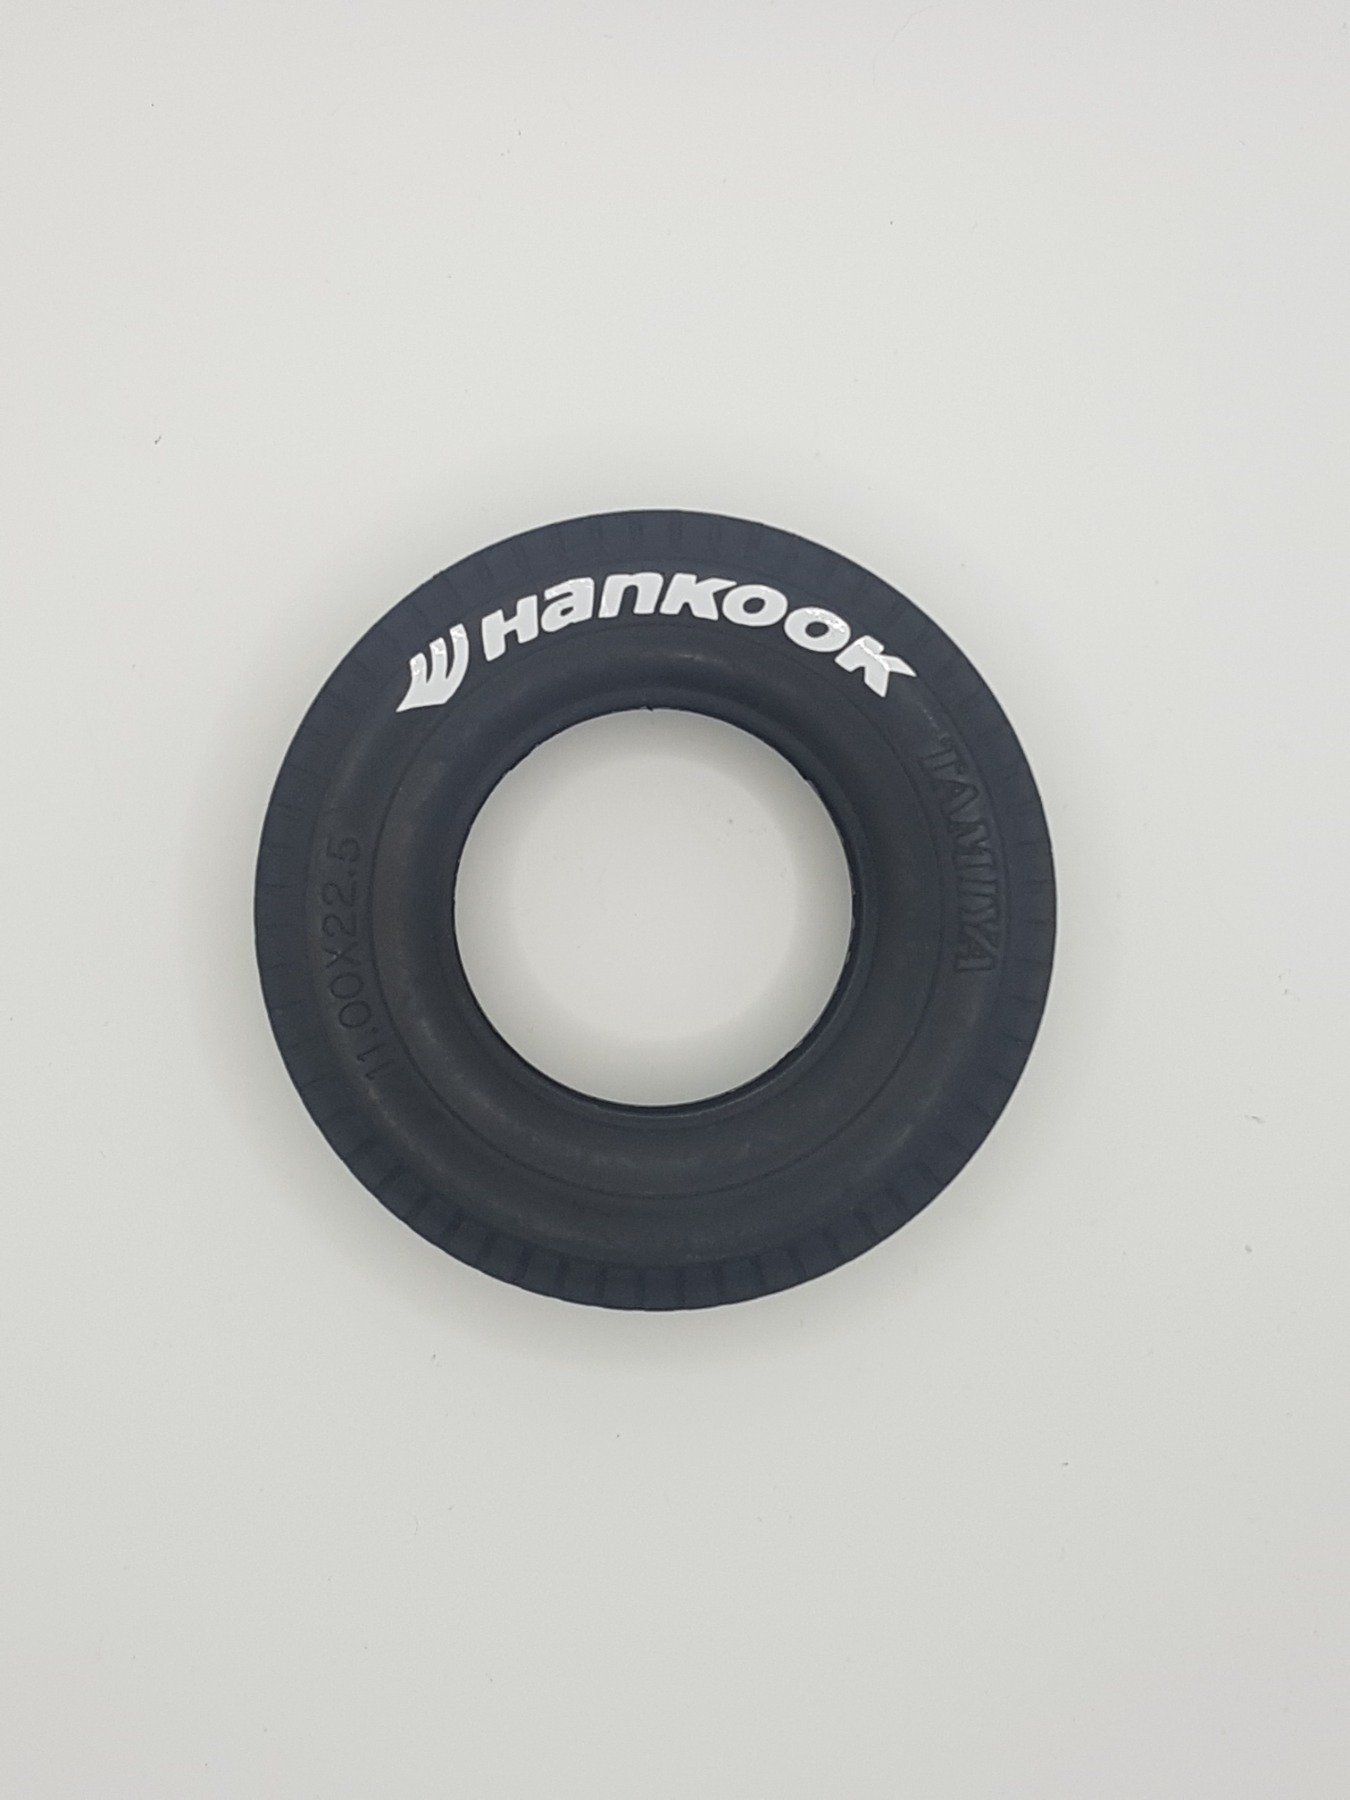 Reifenaufkleber Hankook für RC Lkw (Tamiya, Carson) - Maßstab 1:14, Online  Shop